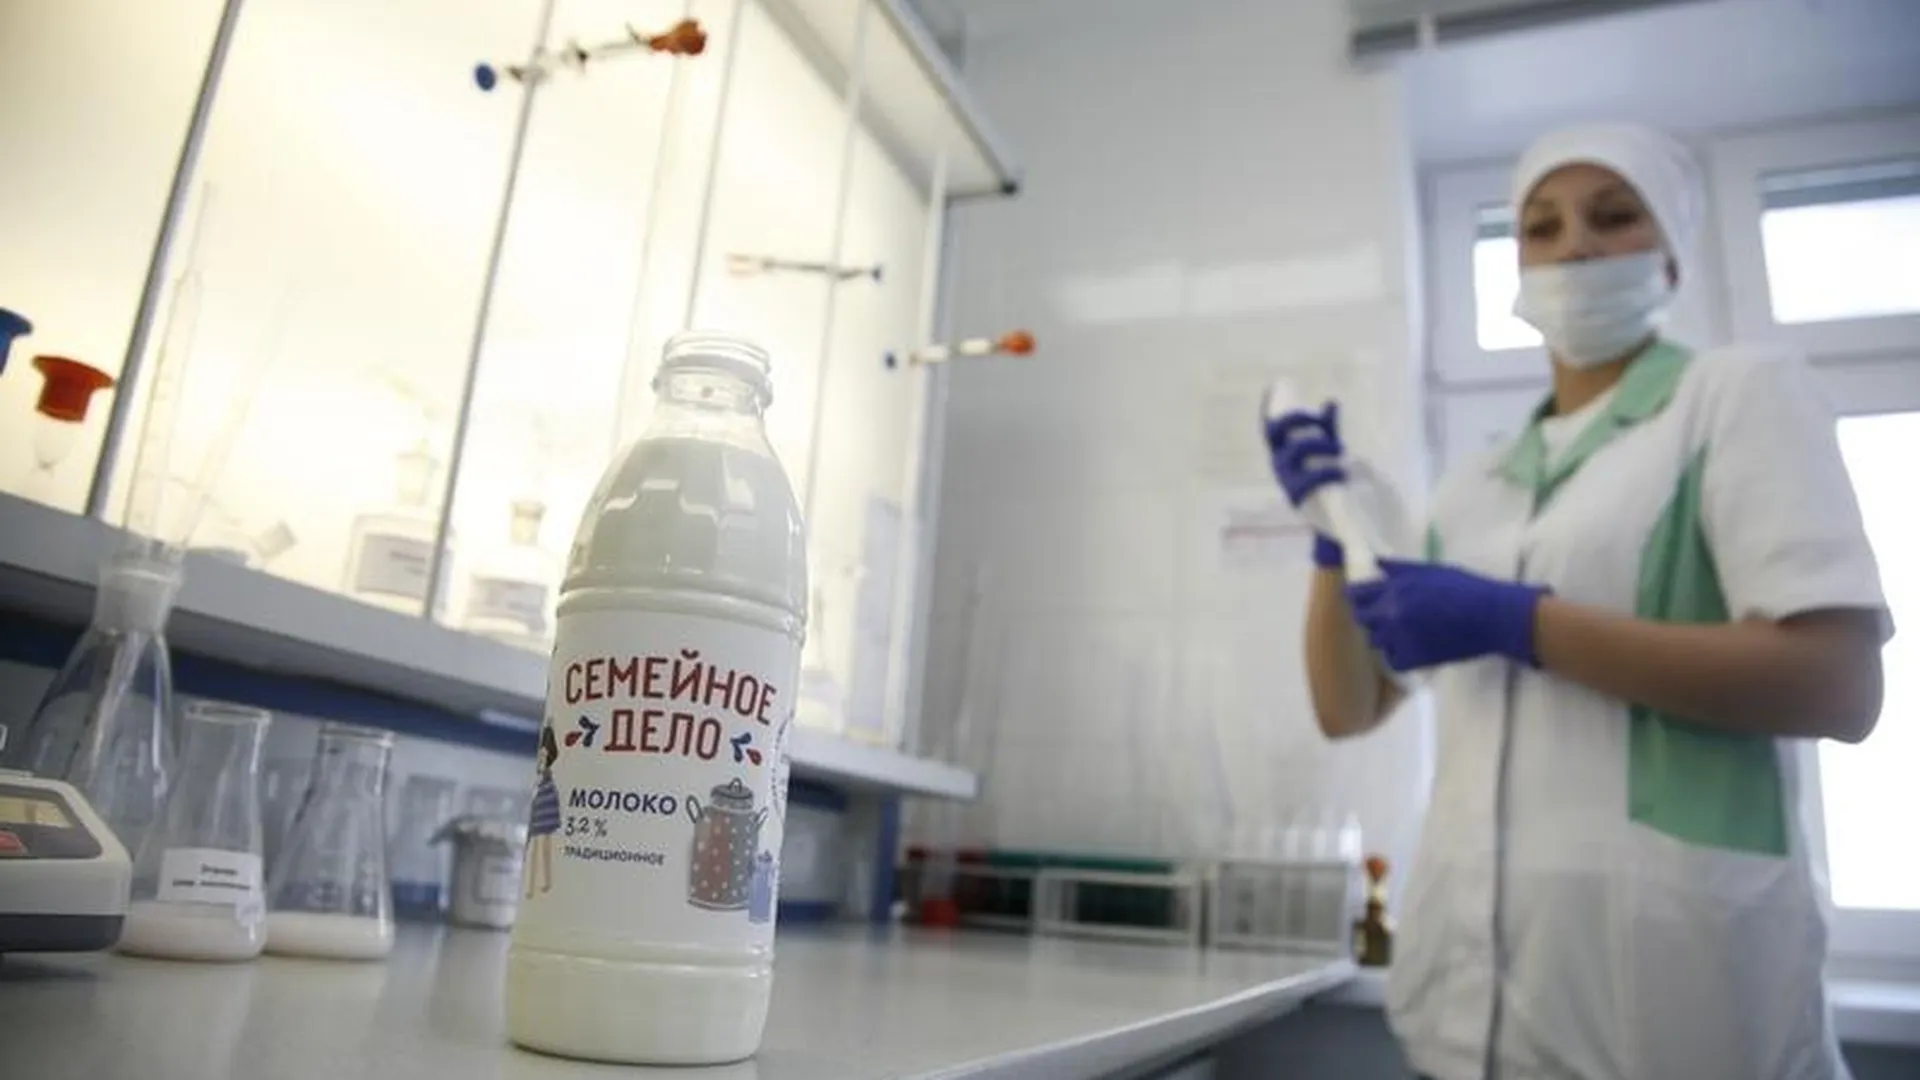 Всемирный день молока в Подмосковье отметили открытием нового бренда